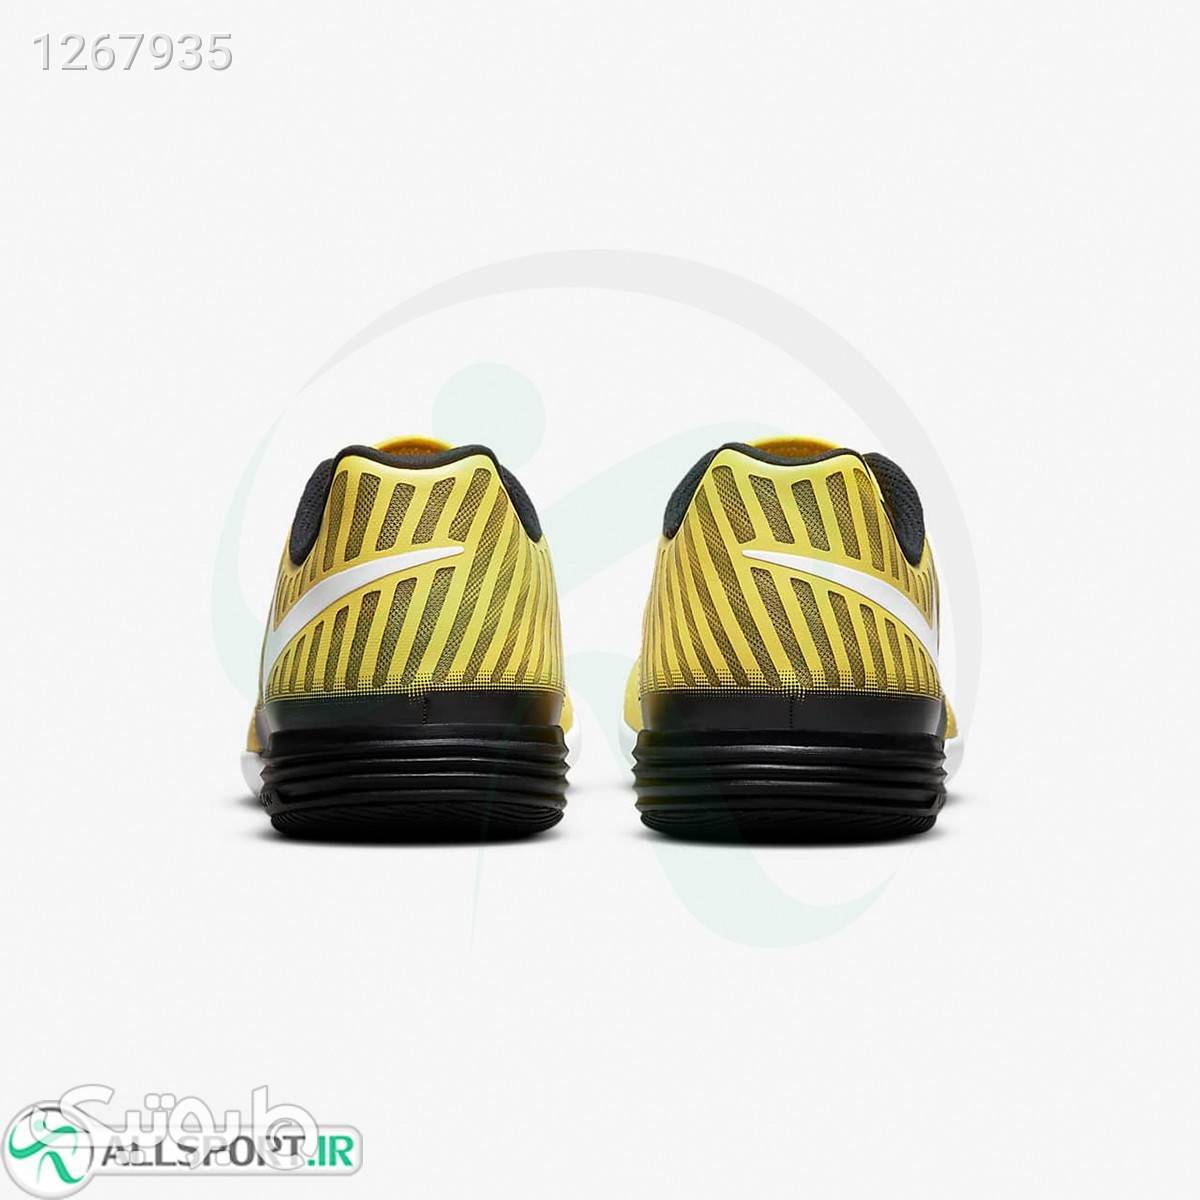 کفش فوتسال نایک لونارگتو Nike Lunar Gato II IC 580456710 زرد كتانی مردانه